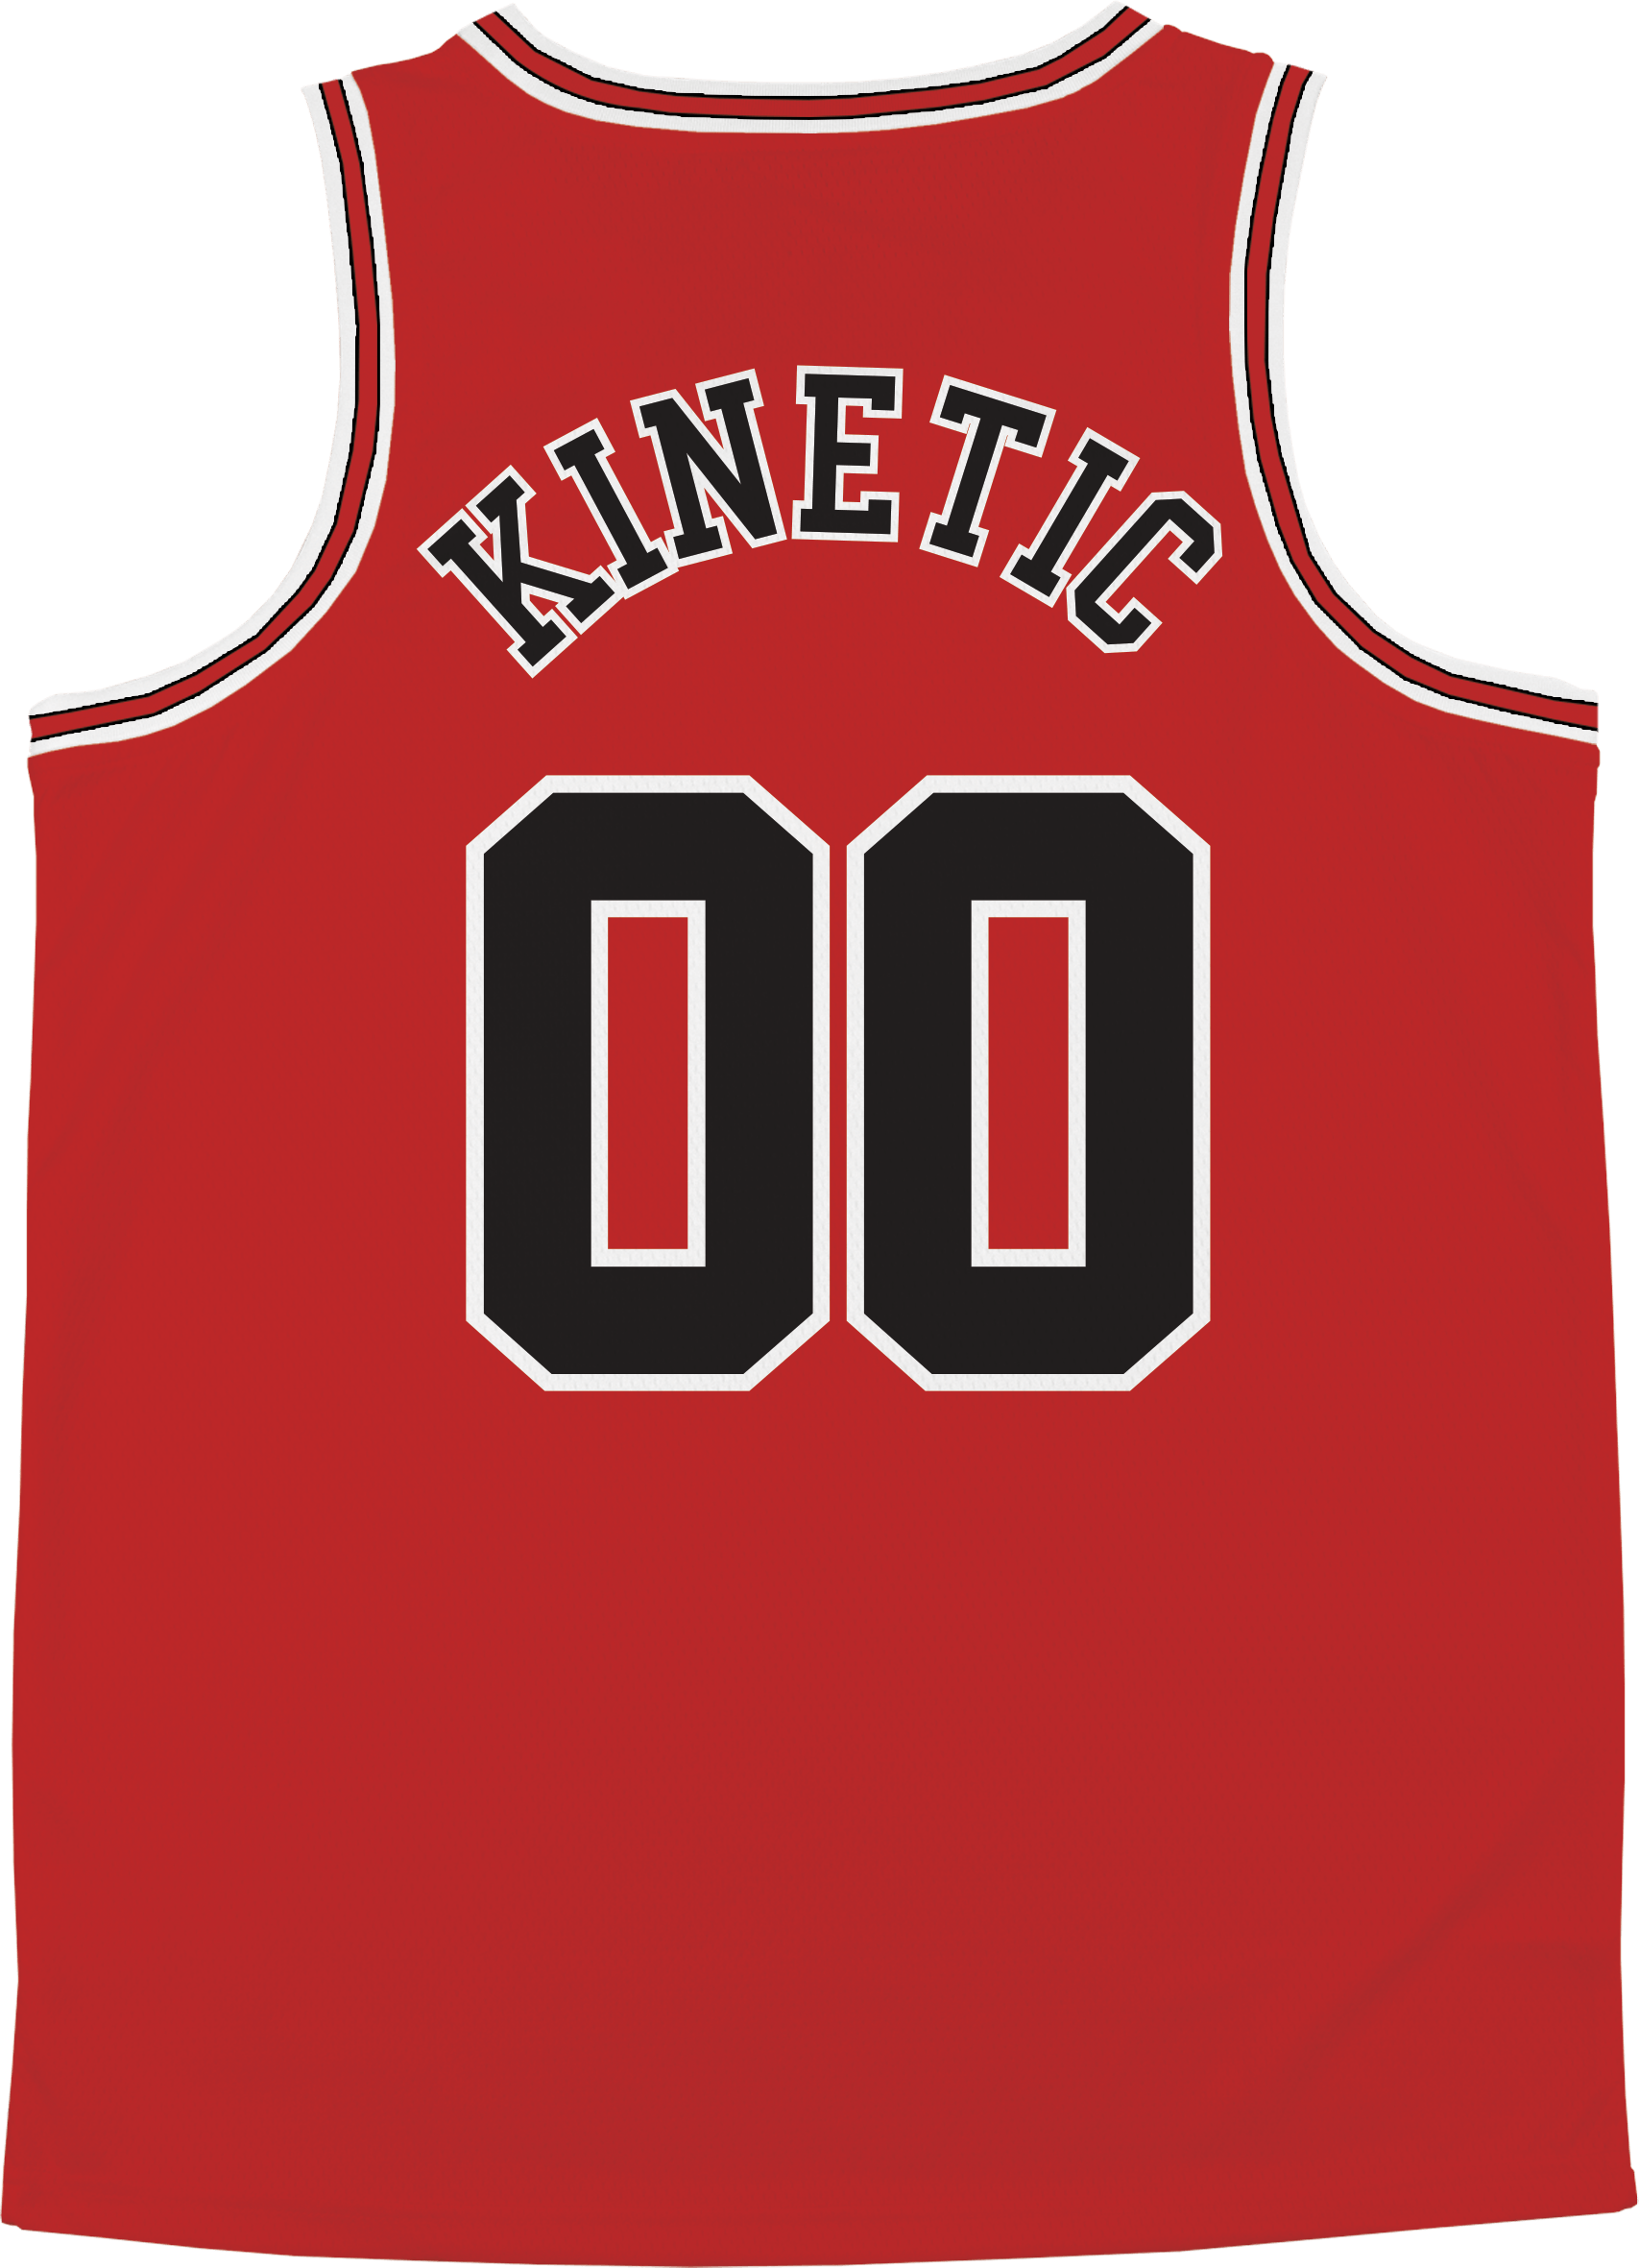 Pi Beta Phi - Big Red Basketball Jersey Premium Basketball Kinetic Society LLC 